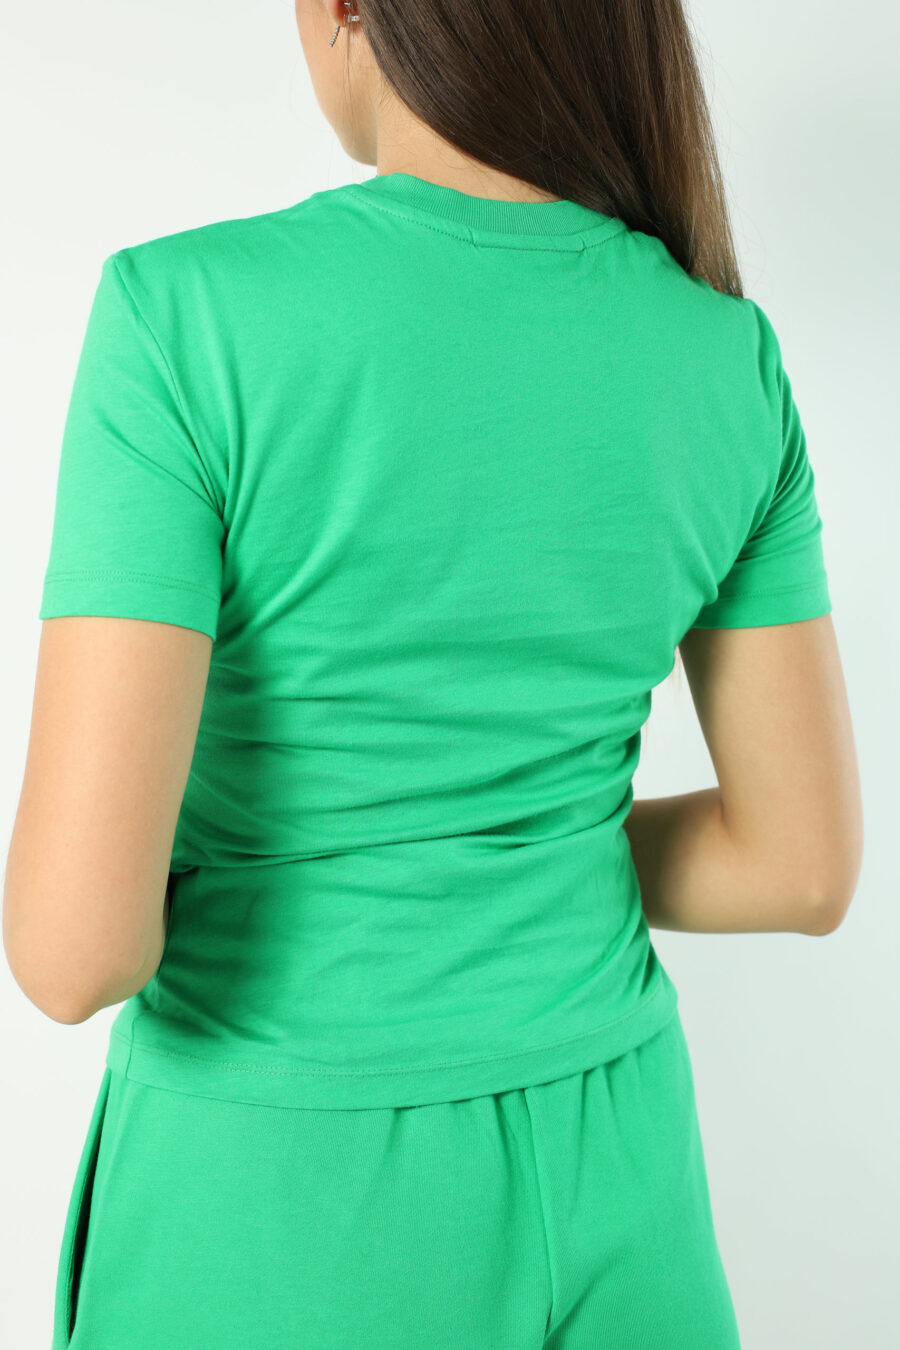 Camiseta verde claro con logo ojo y estrella - Photos 2586